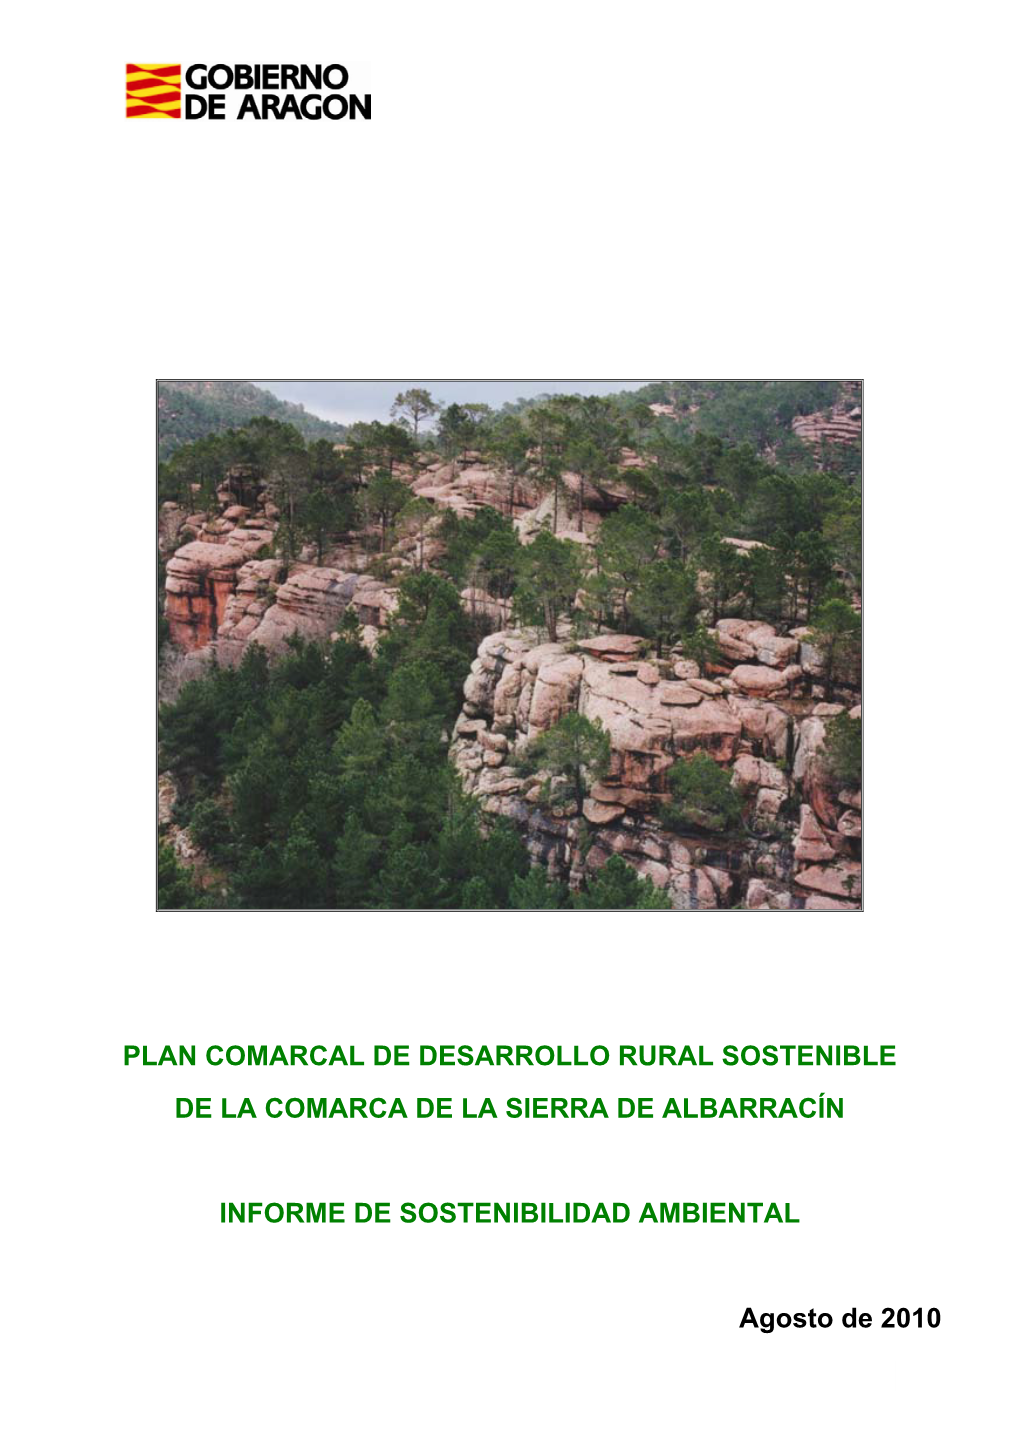 Plan Comarcal De Desarrollo Rural Sostenible De La Comarca De La Sierra De Albarracín